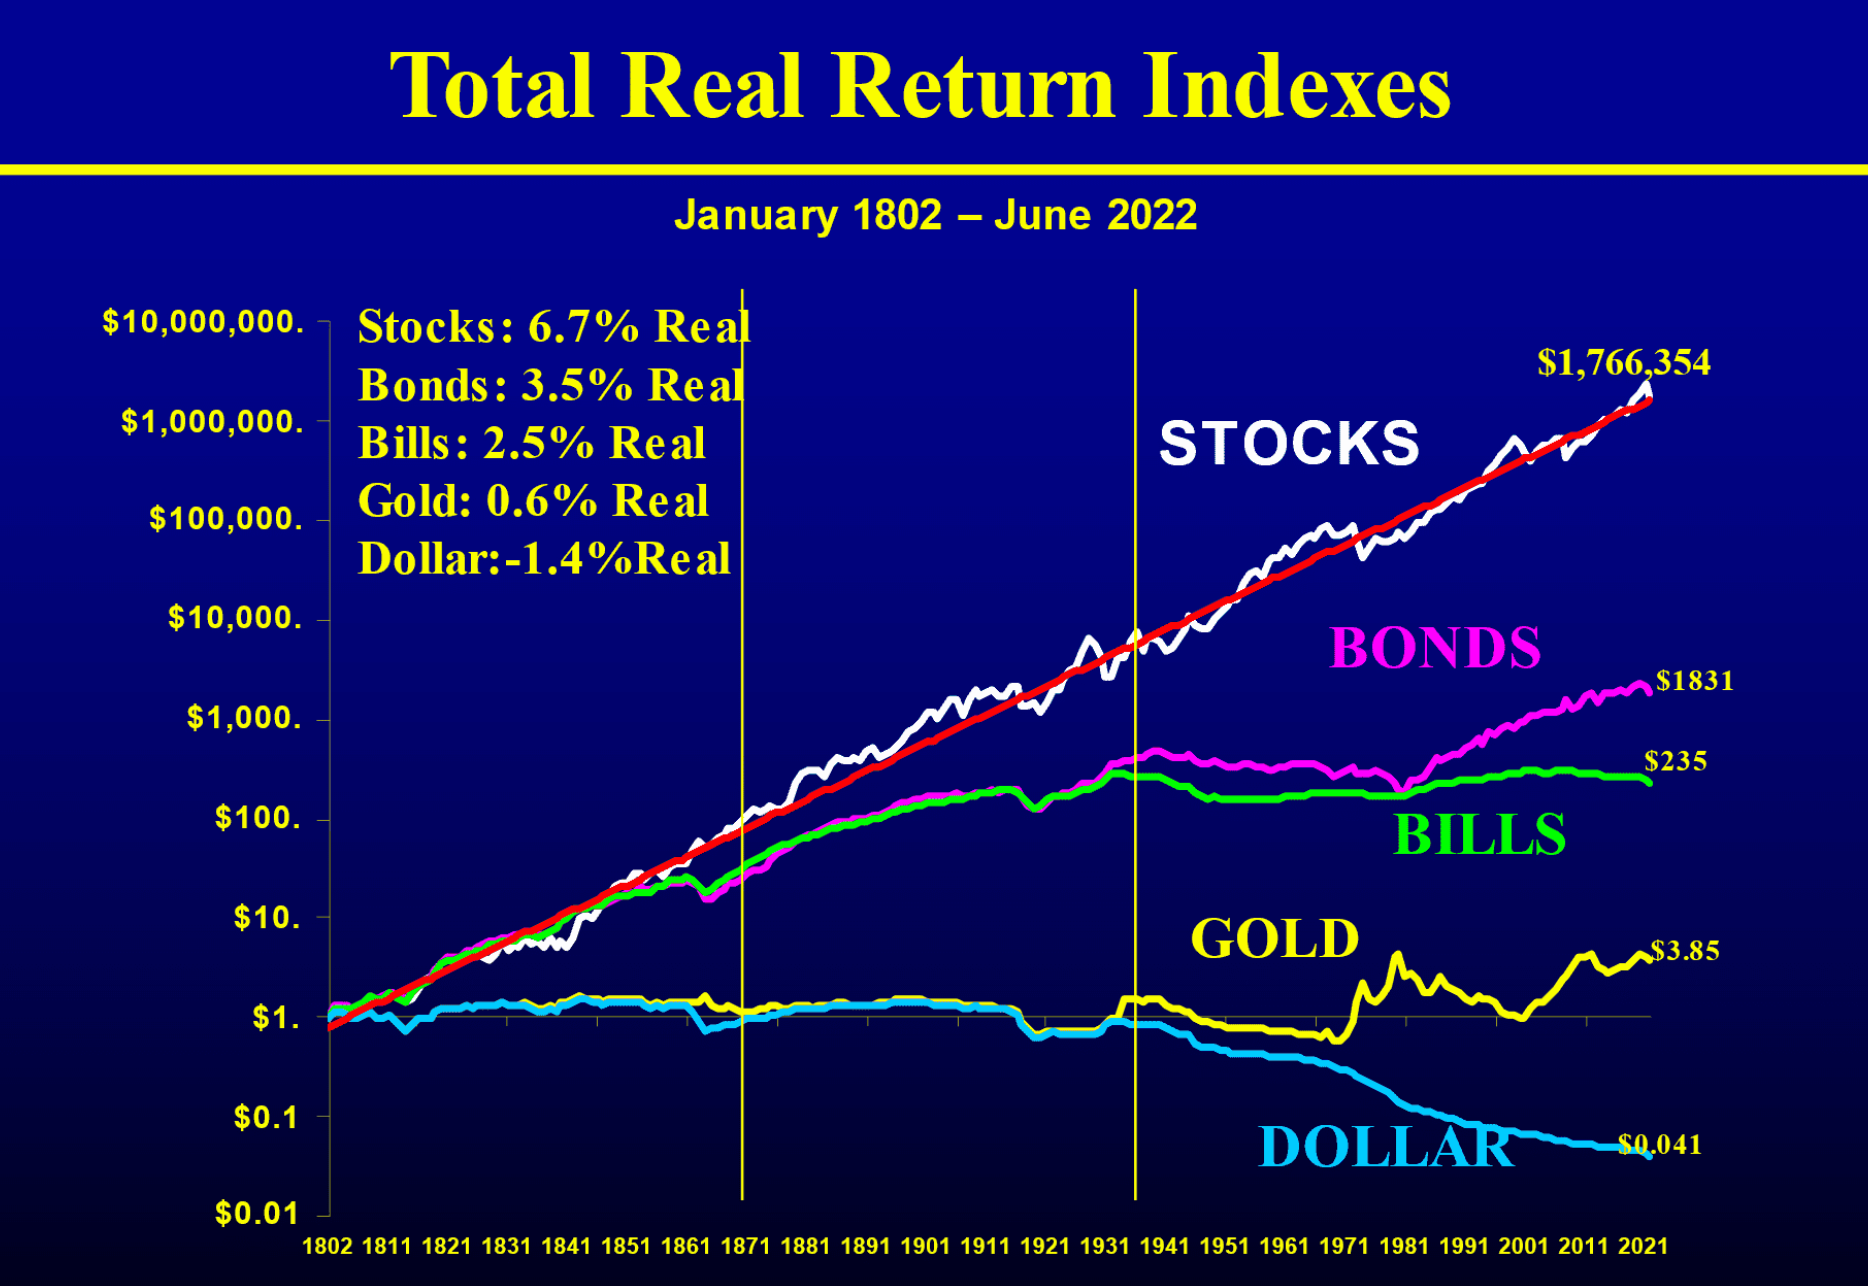 株式投資は歴史的に最も高いリターンをだしている